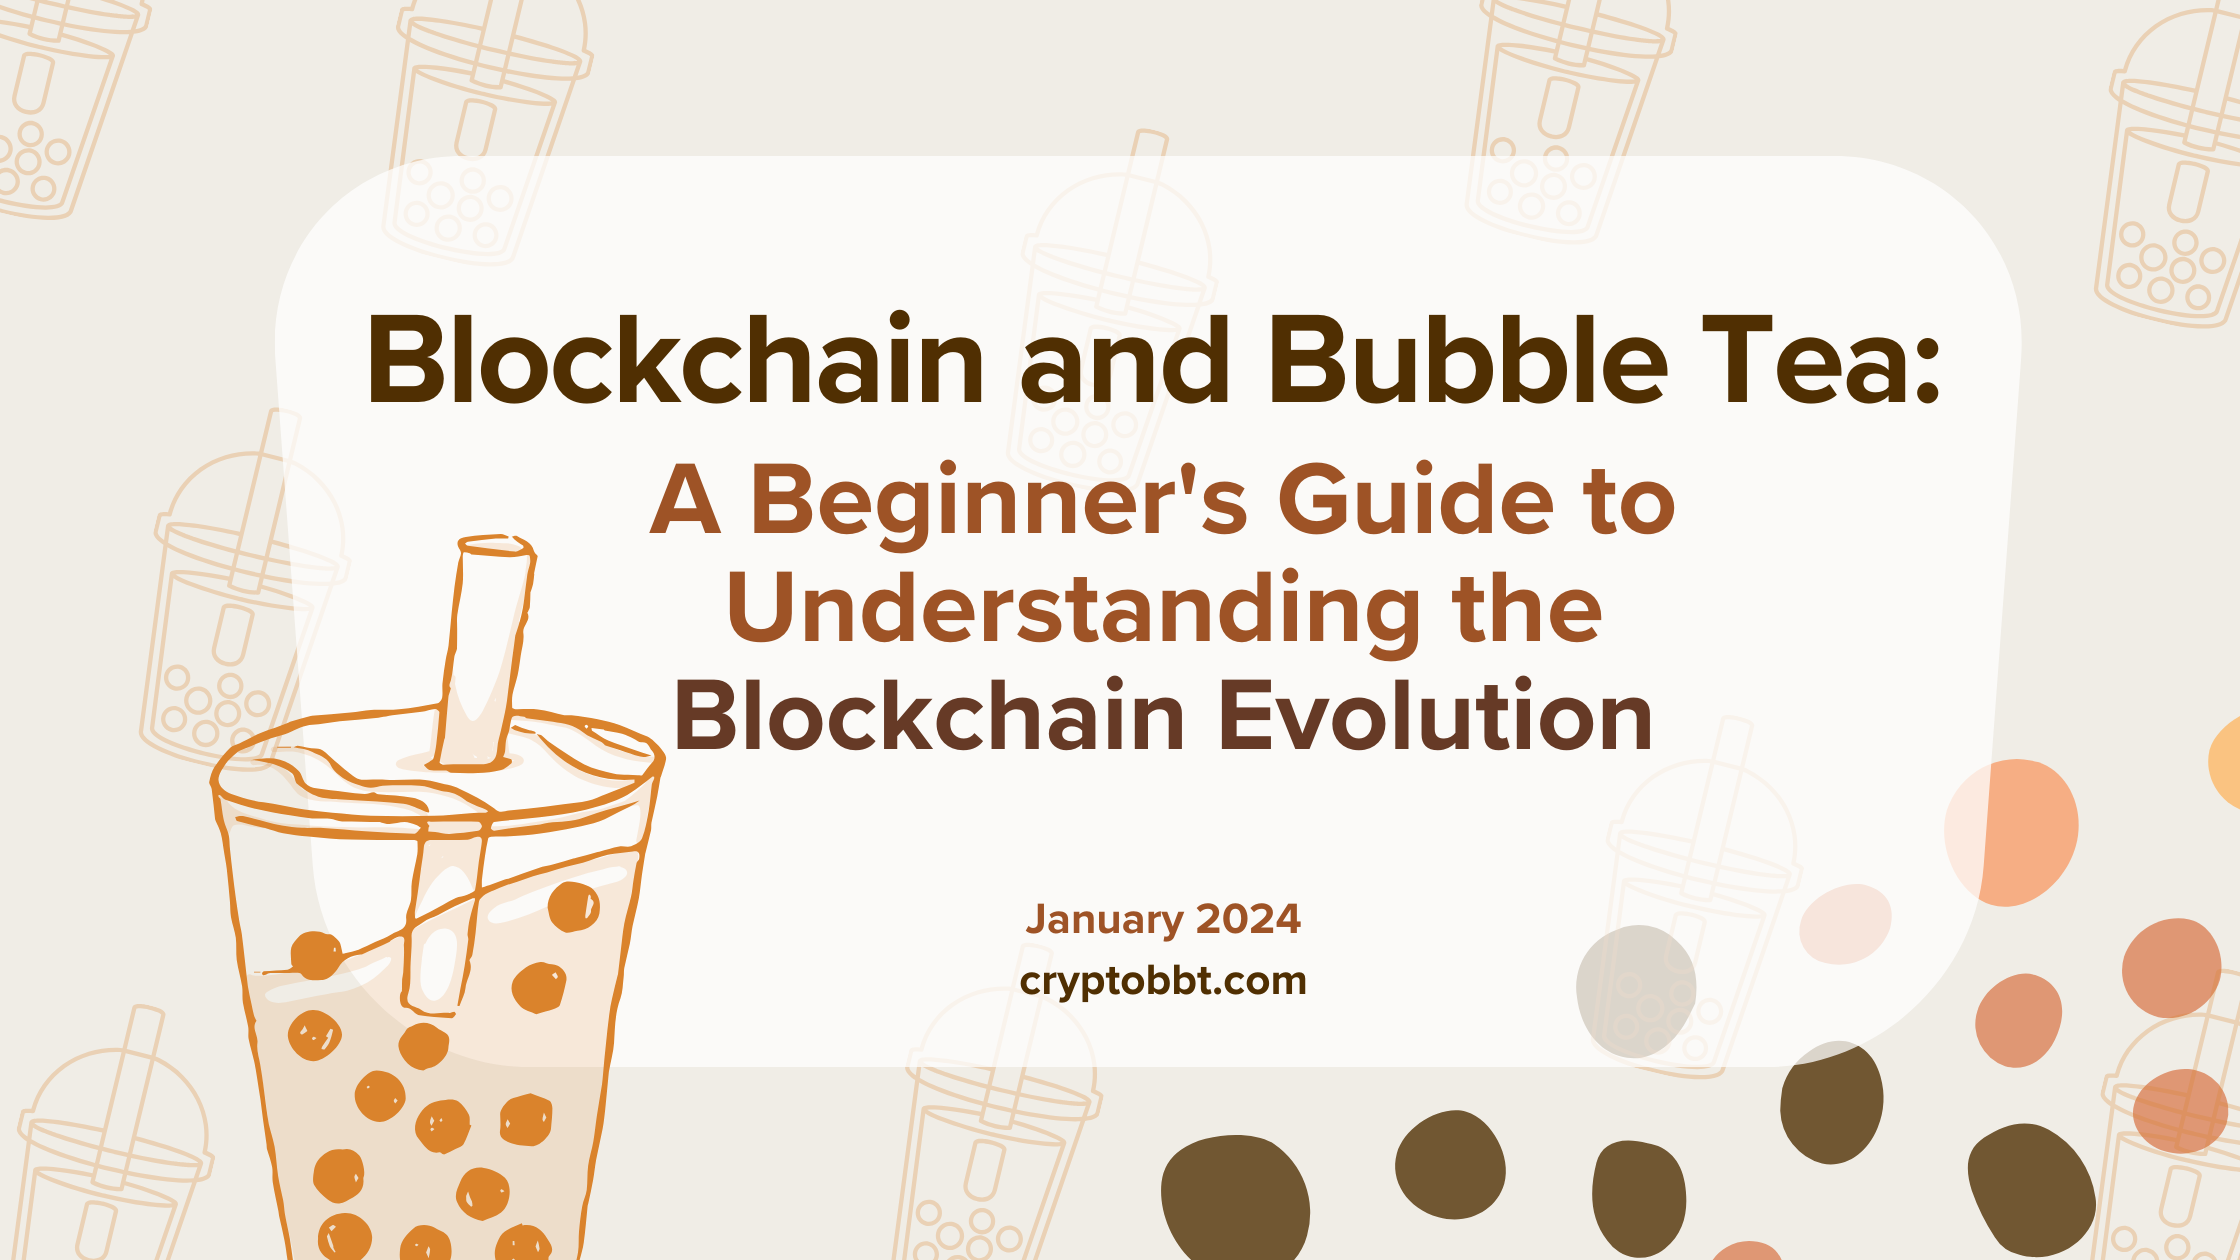 Blockchain and Bubble Tea: A Guide to the Blockchain Evolution